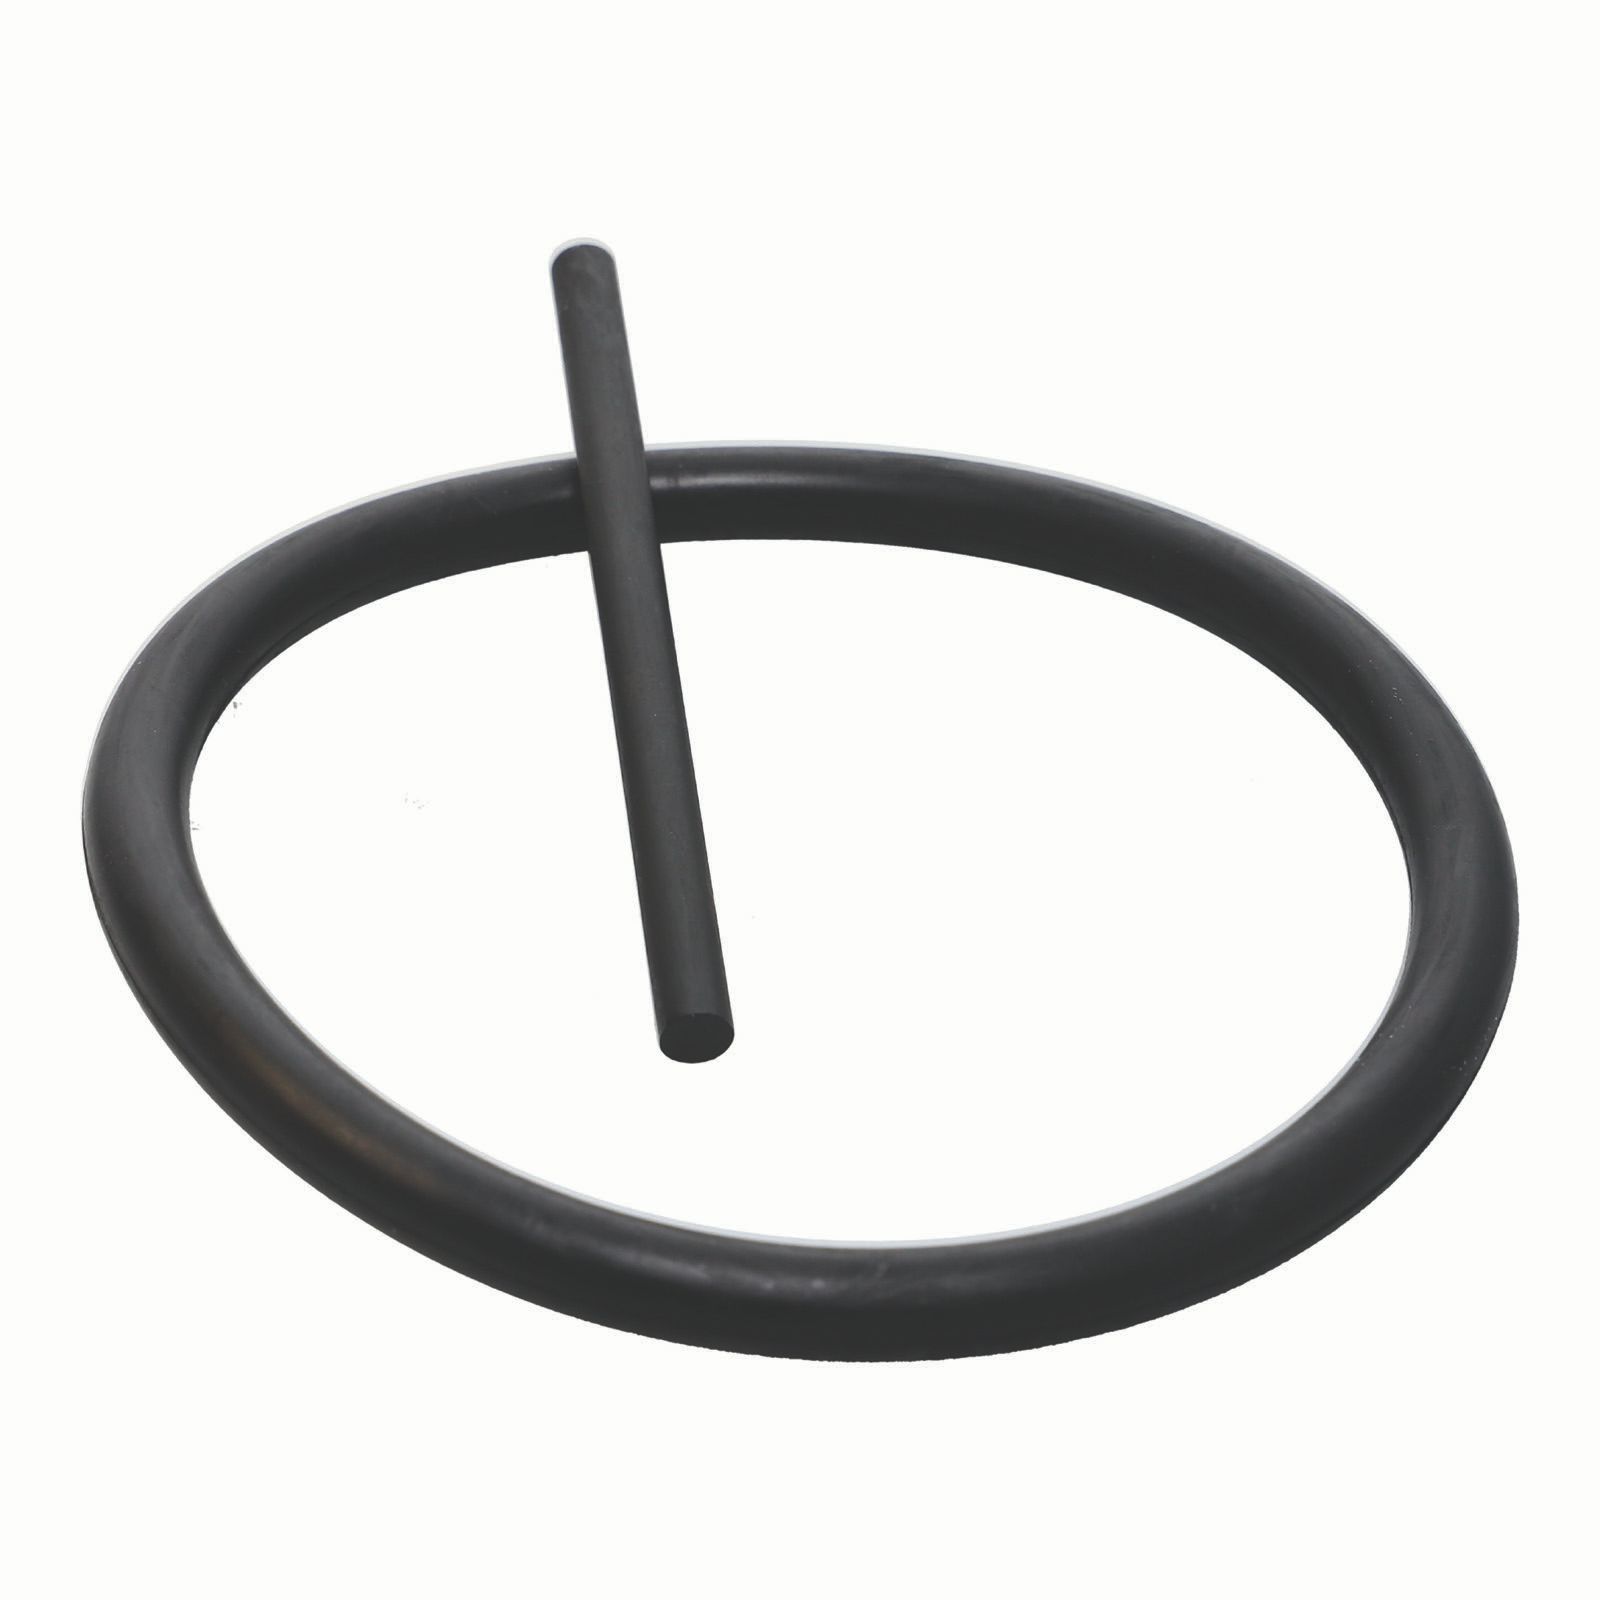 Pin and O-ring set-SQ1.1/2-d127 Produktfoto